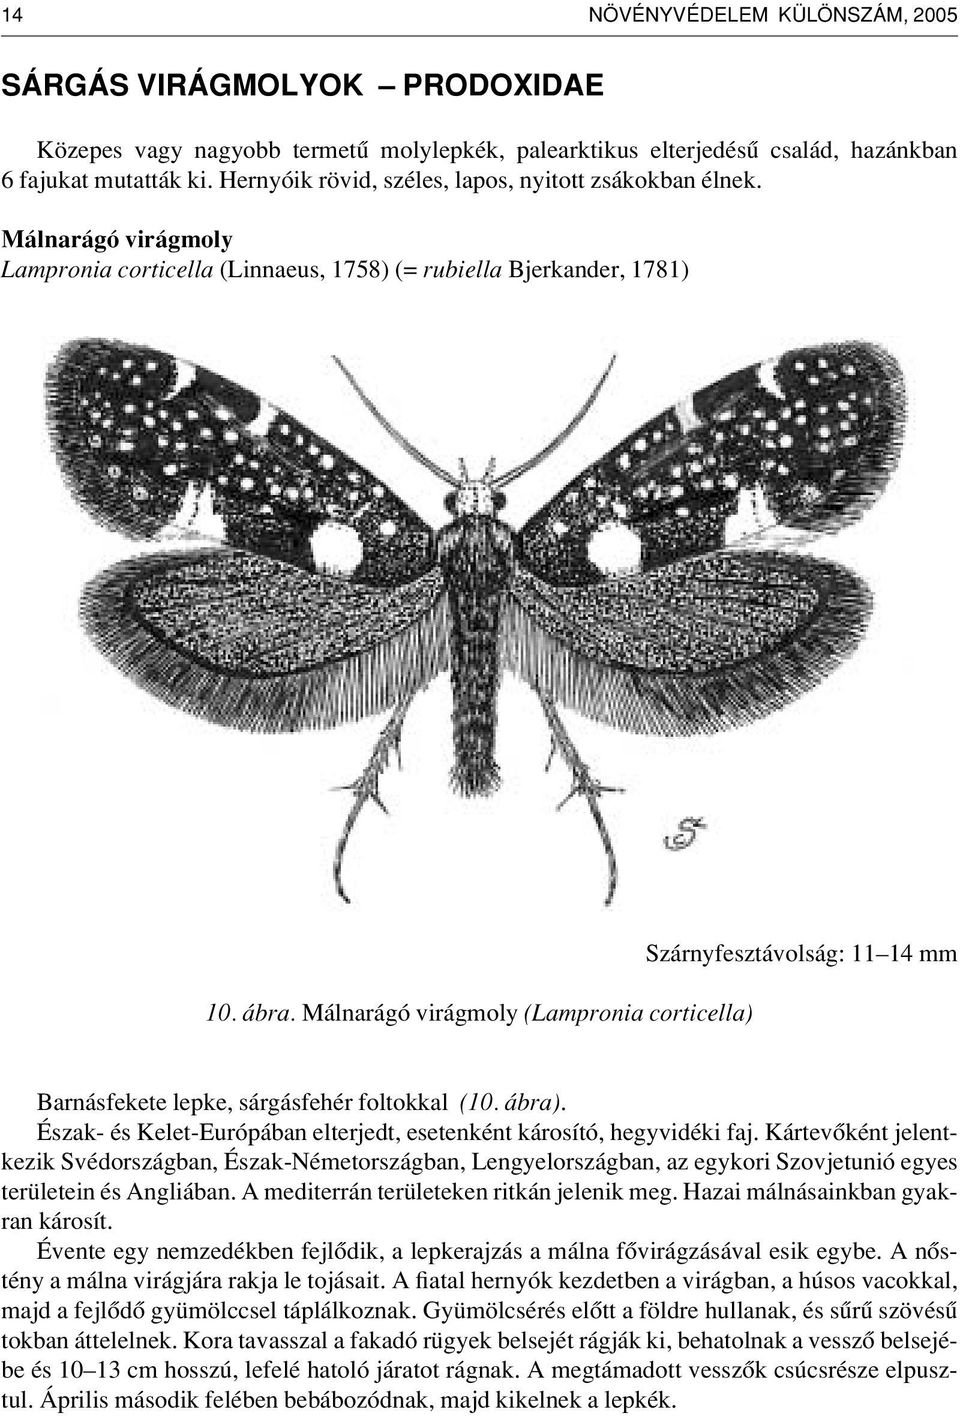 Málnarágó virágmoly (Lampronia corticella) Szárnyfesztávolság: 11 14 mm Barnásfekete lepke, sárgásfehér foltokkal (10. ábra). Észak- és Kelet-Európában elterjedt, esetenként károsító, hegyvidéki faj.